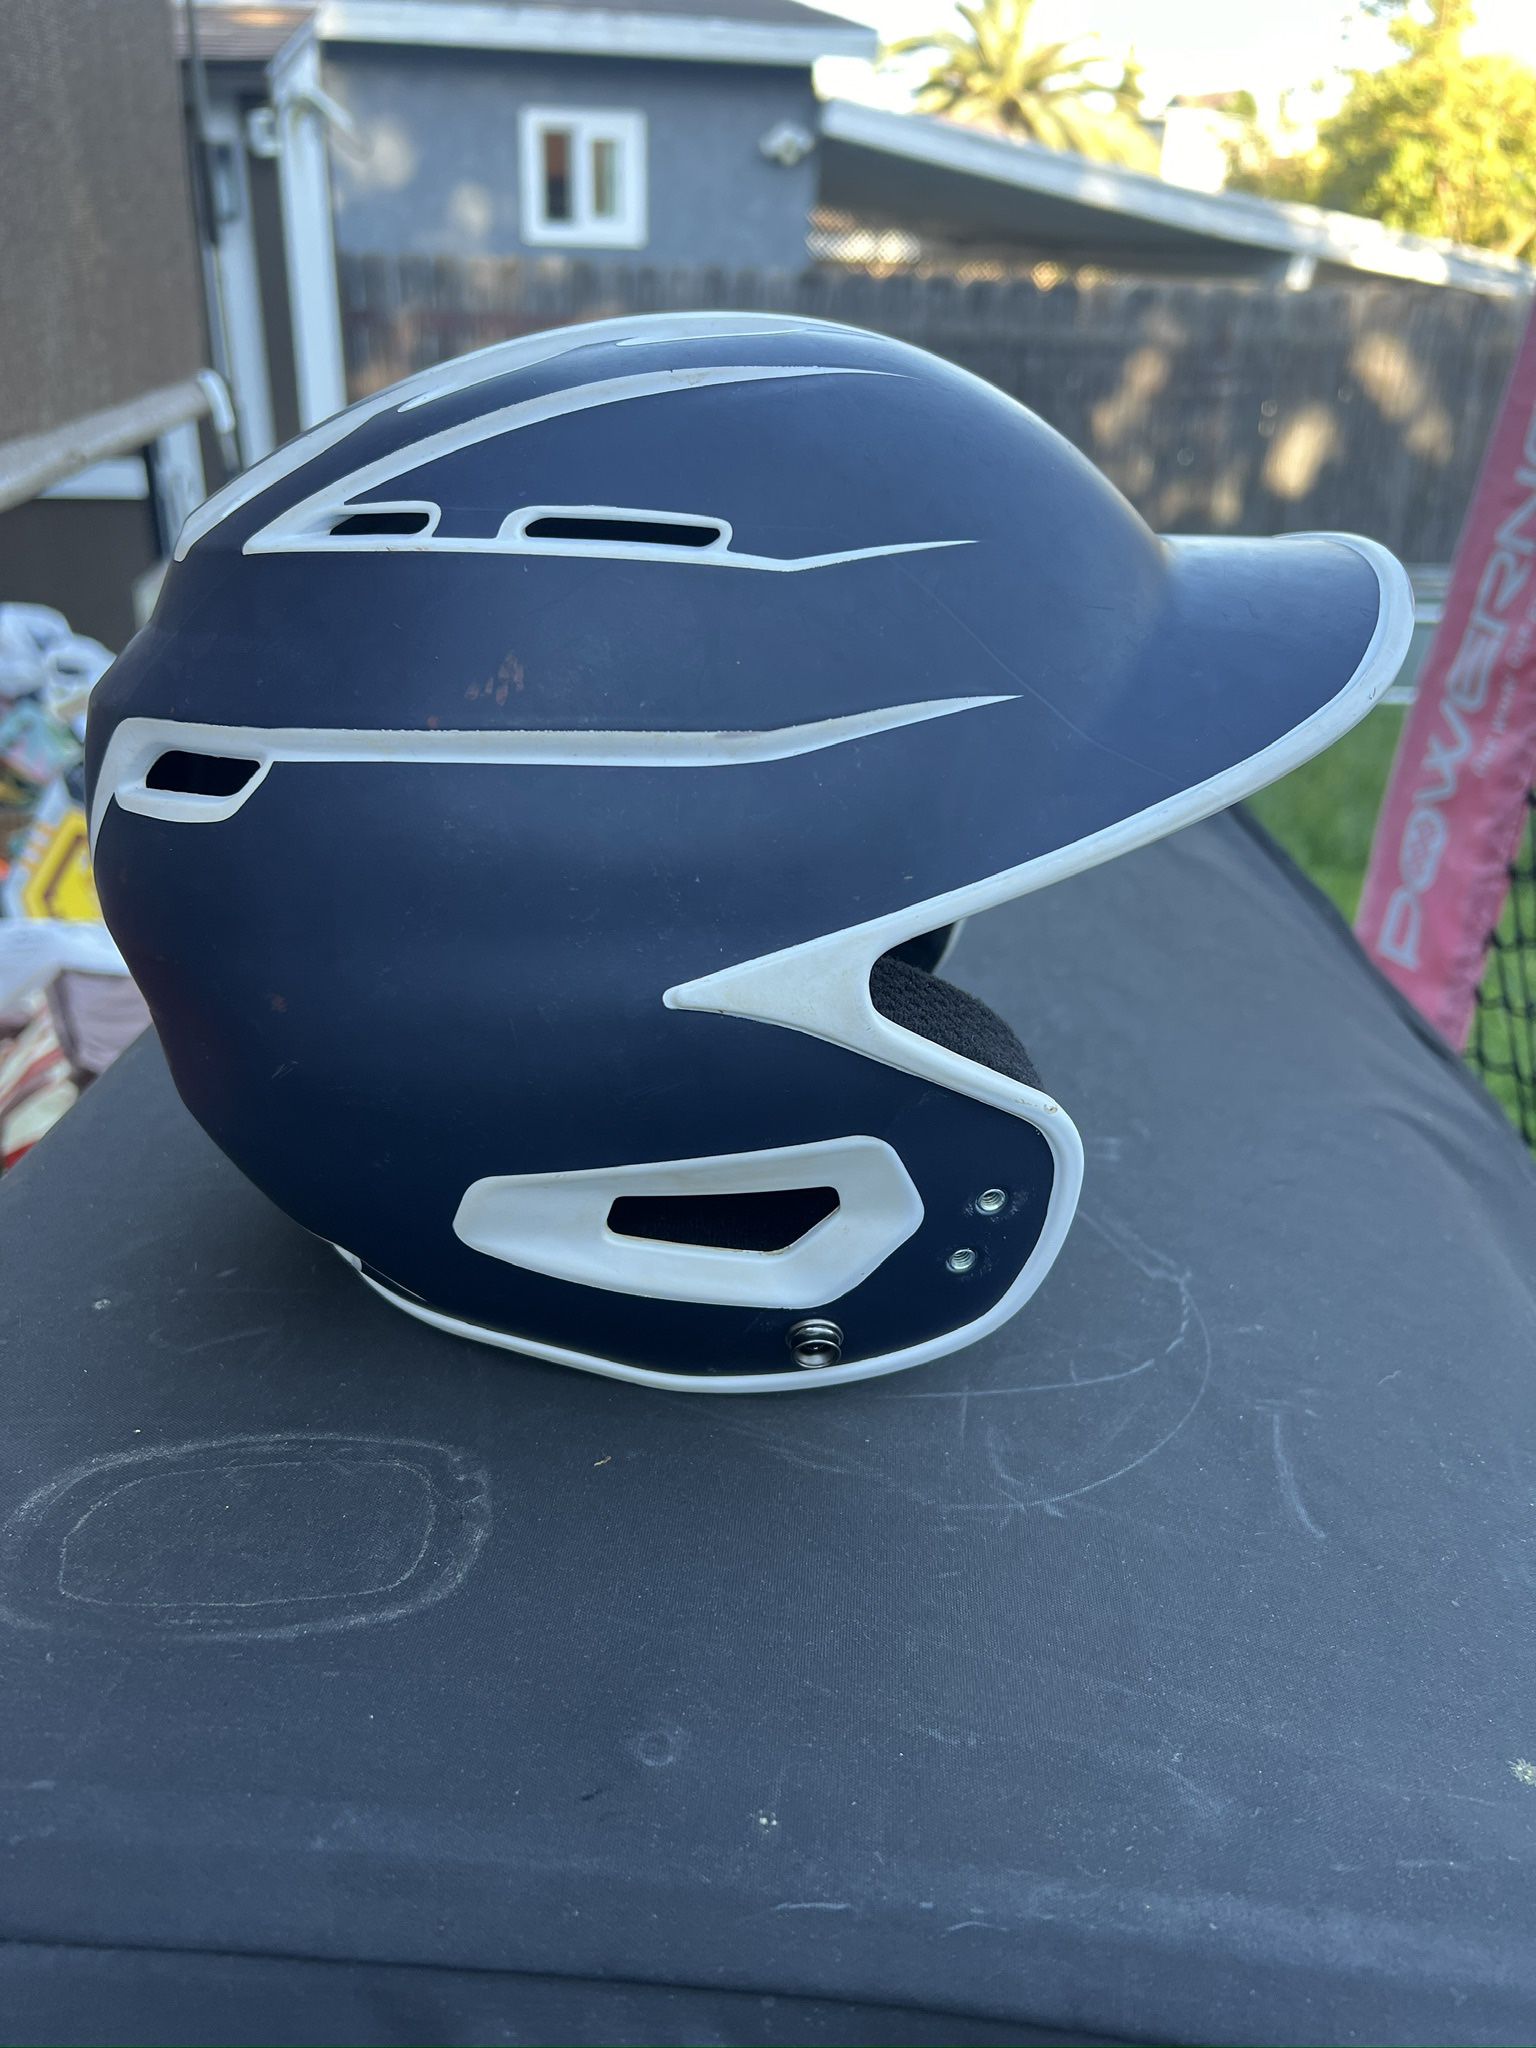 Baseball Batting Helmet